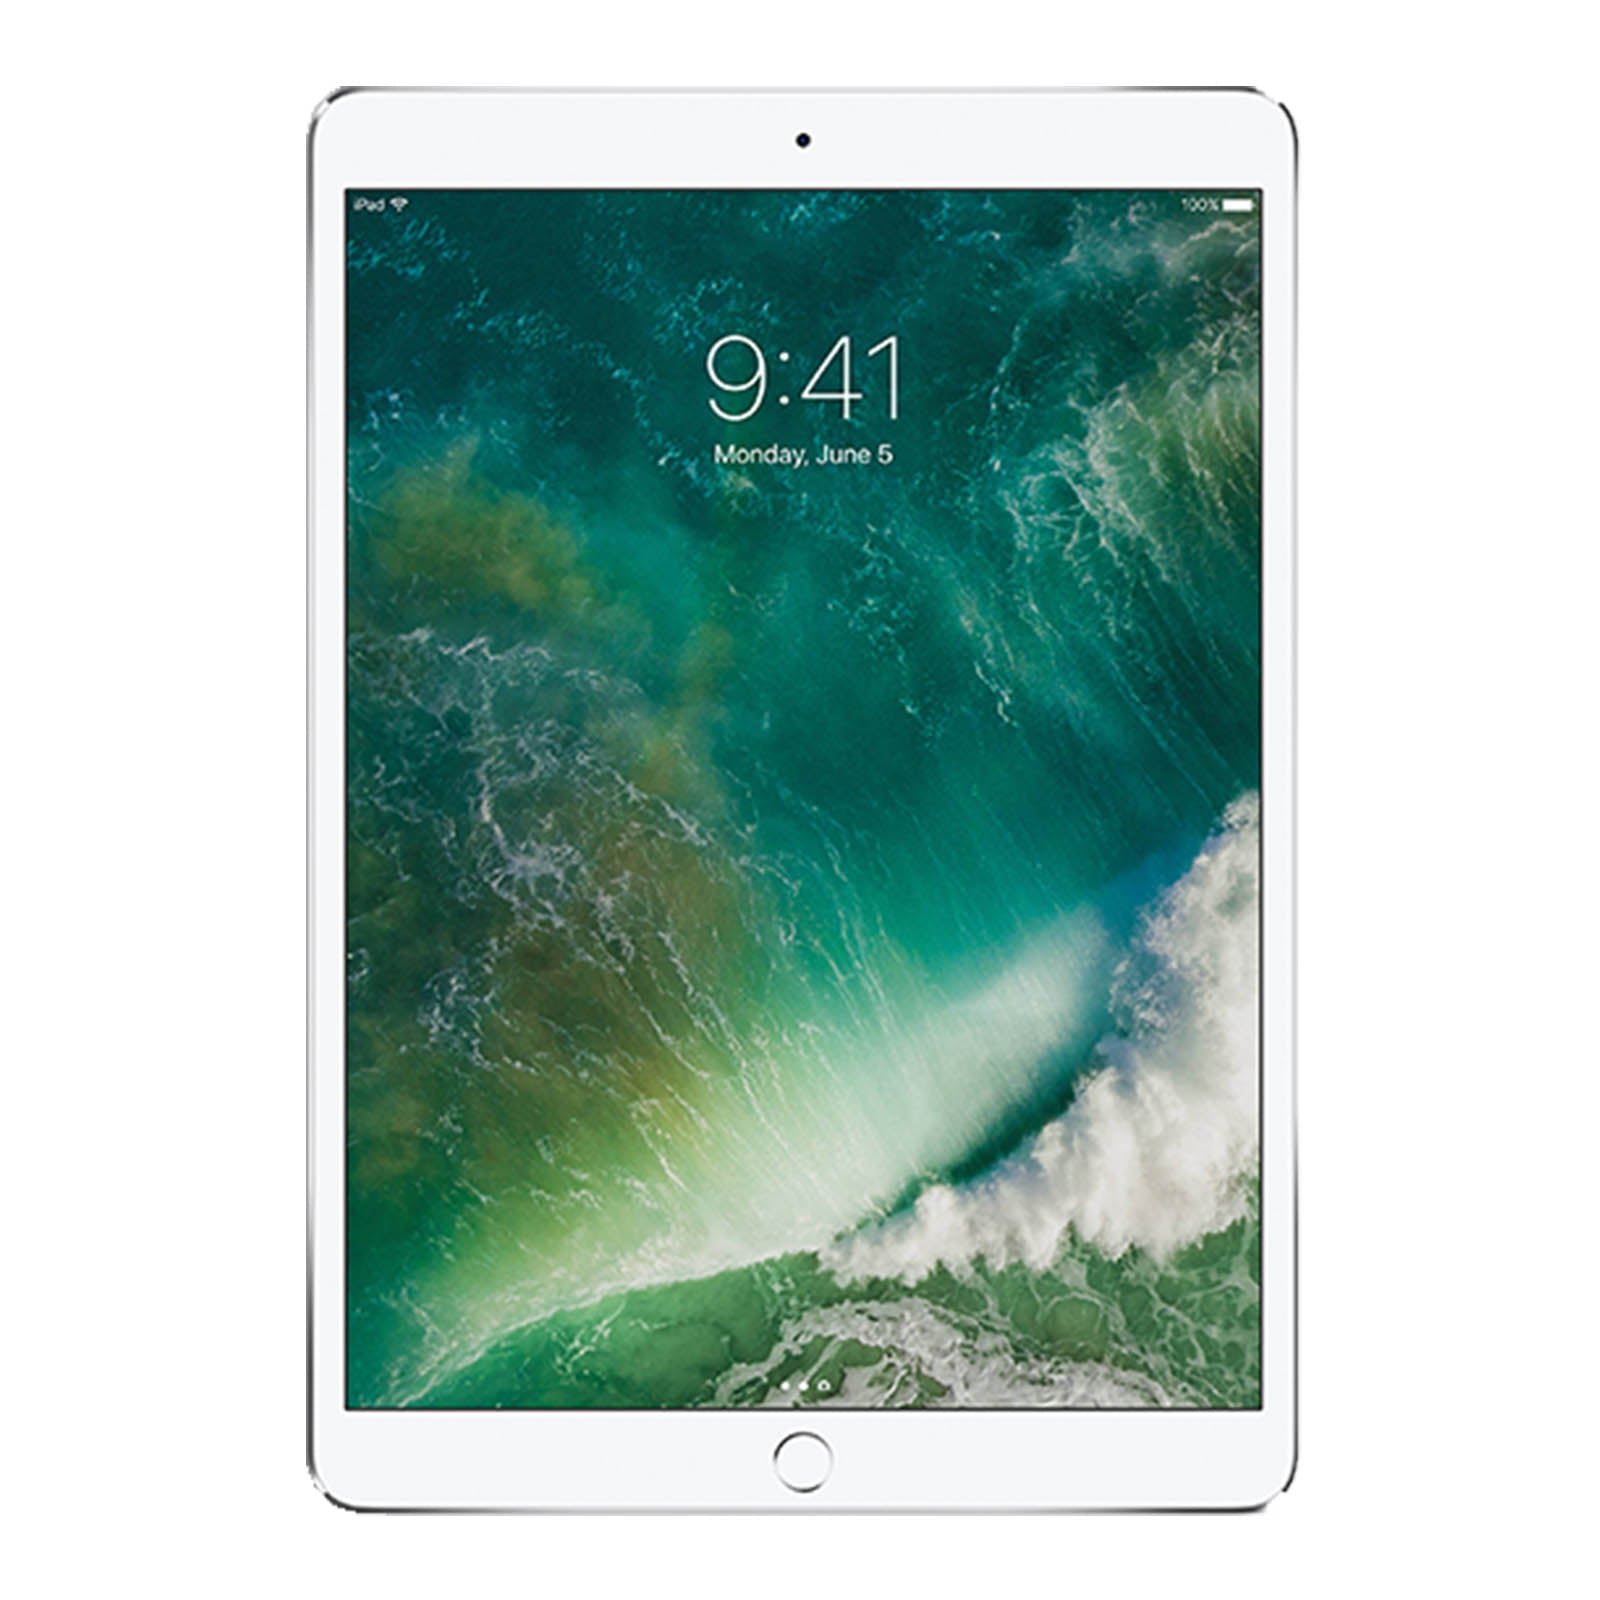 iPad Pro 10.5 Inch 64GB Silver Good - WiFi